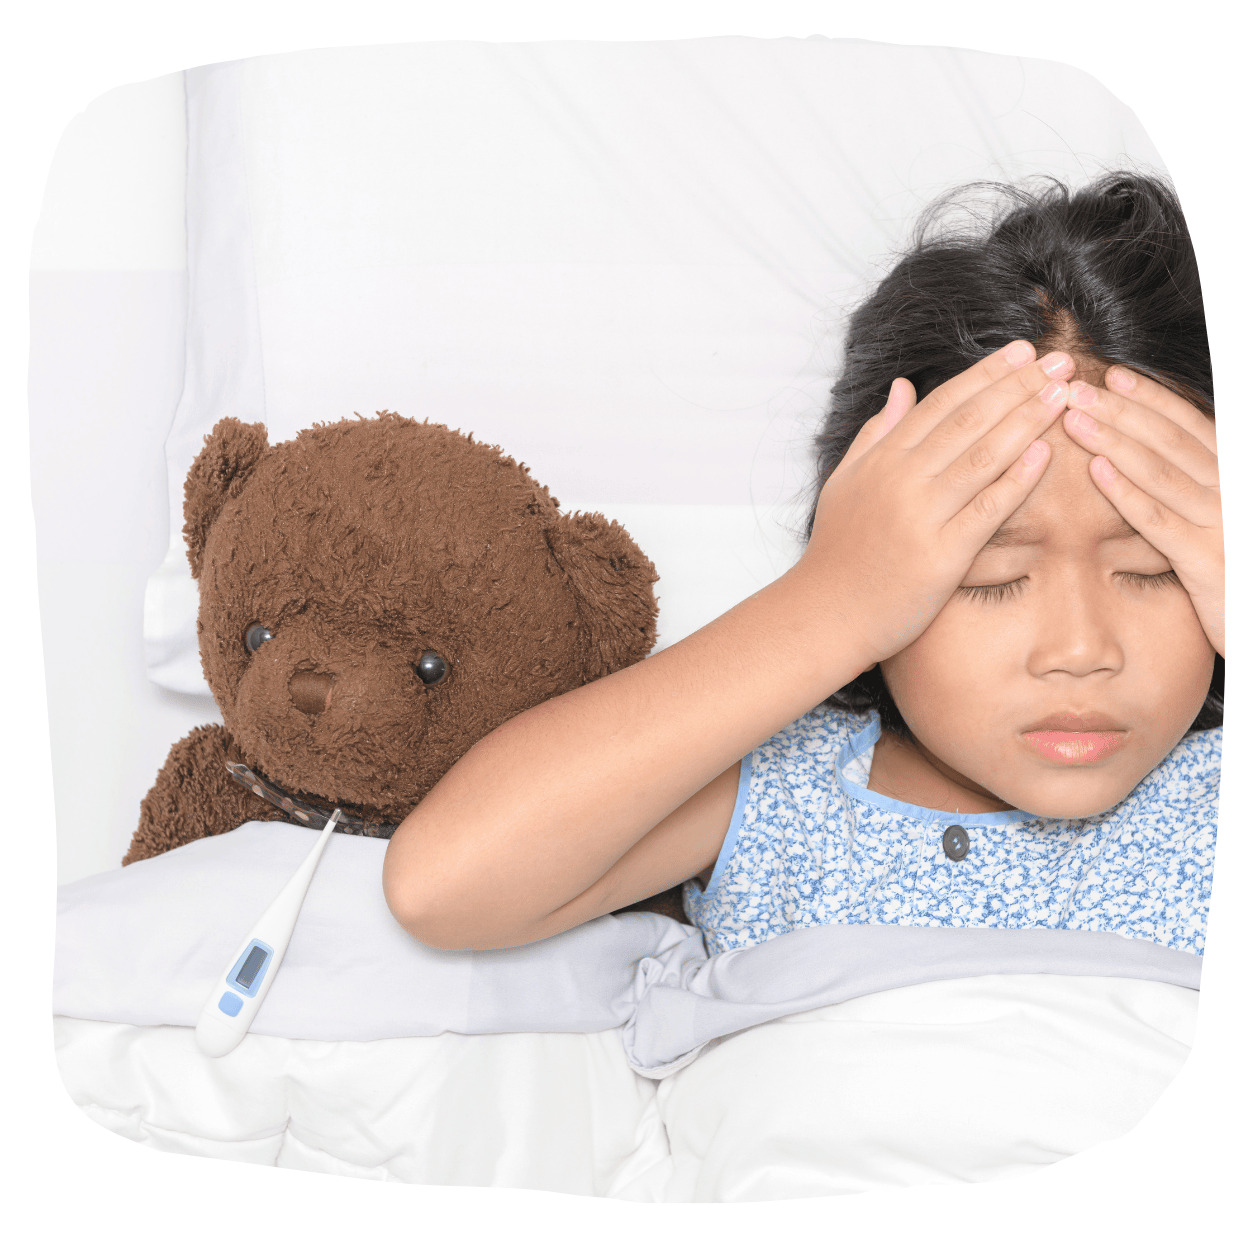 子供の熱の一般的な症状や影響